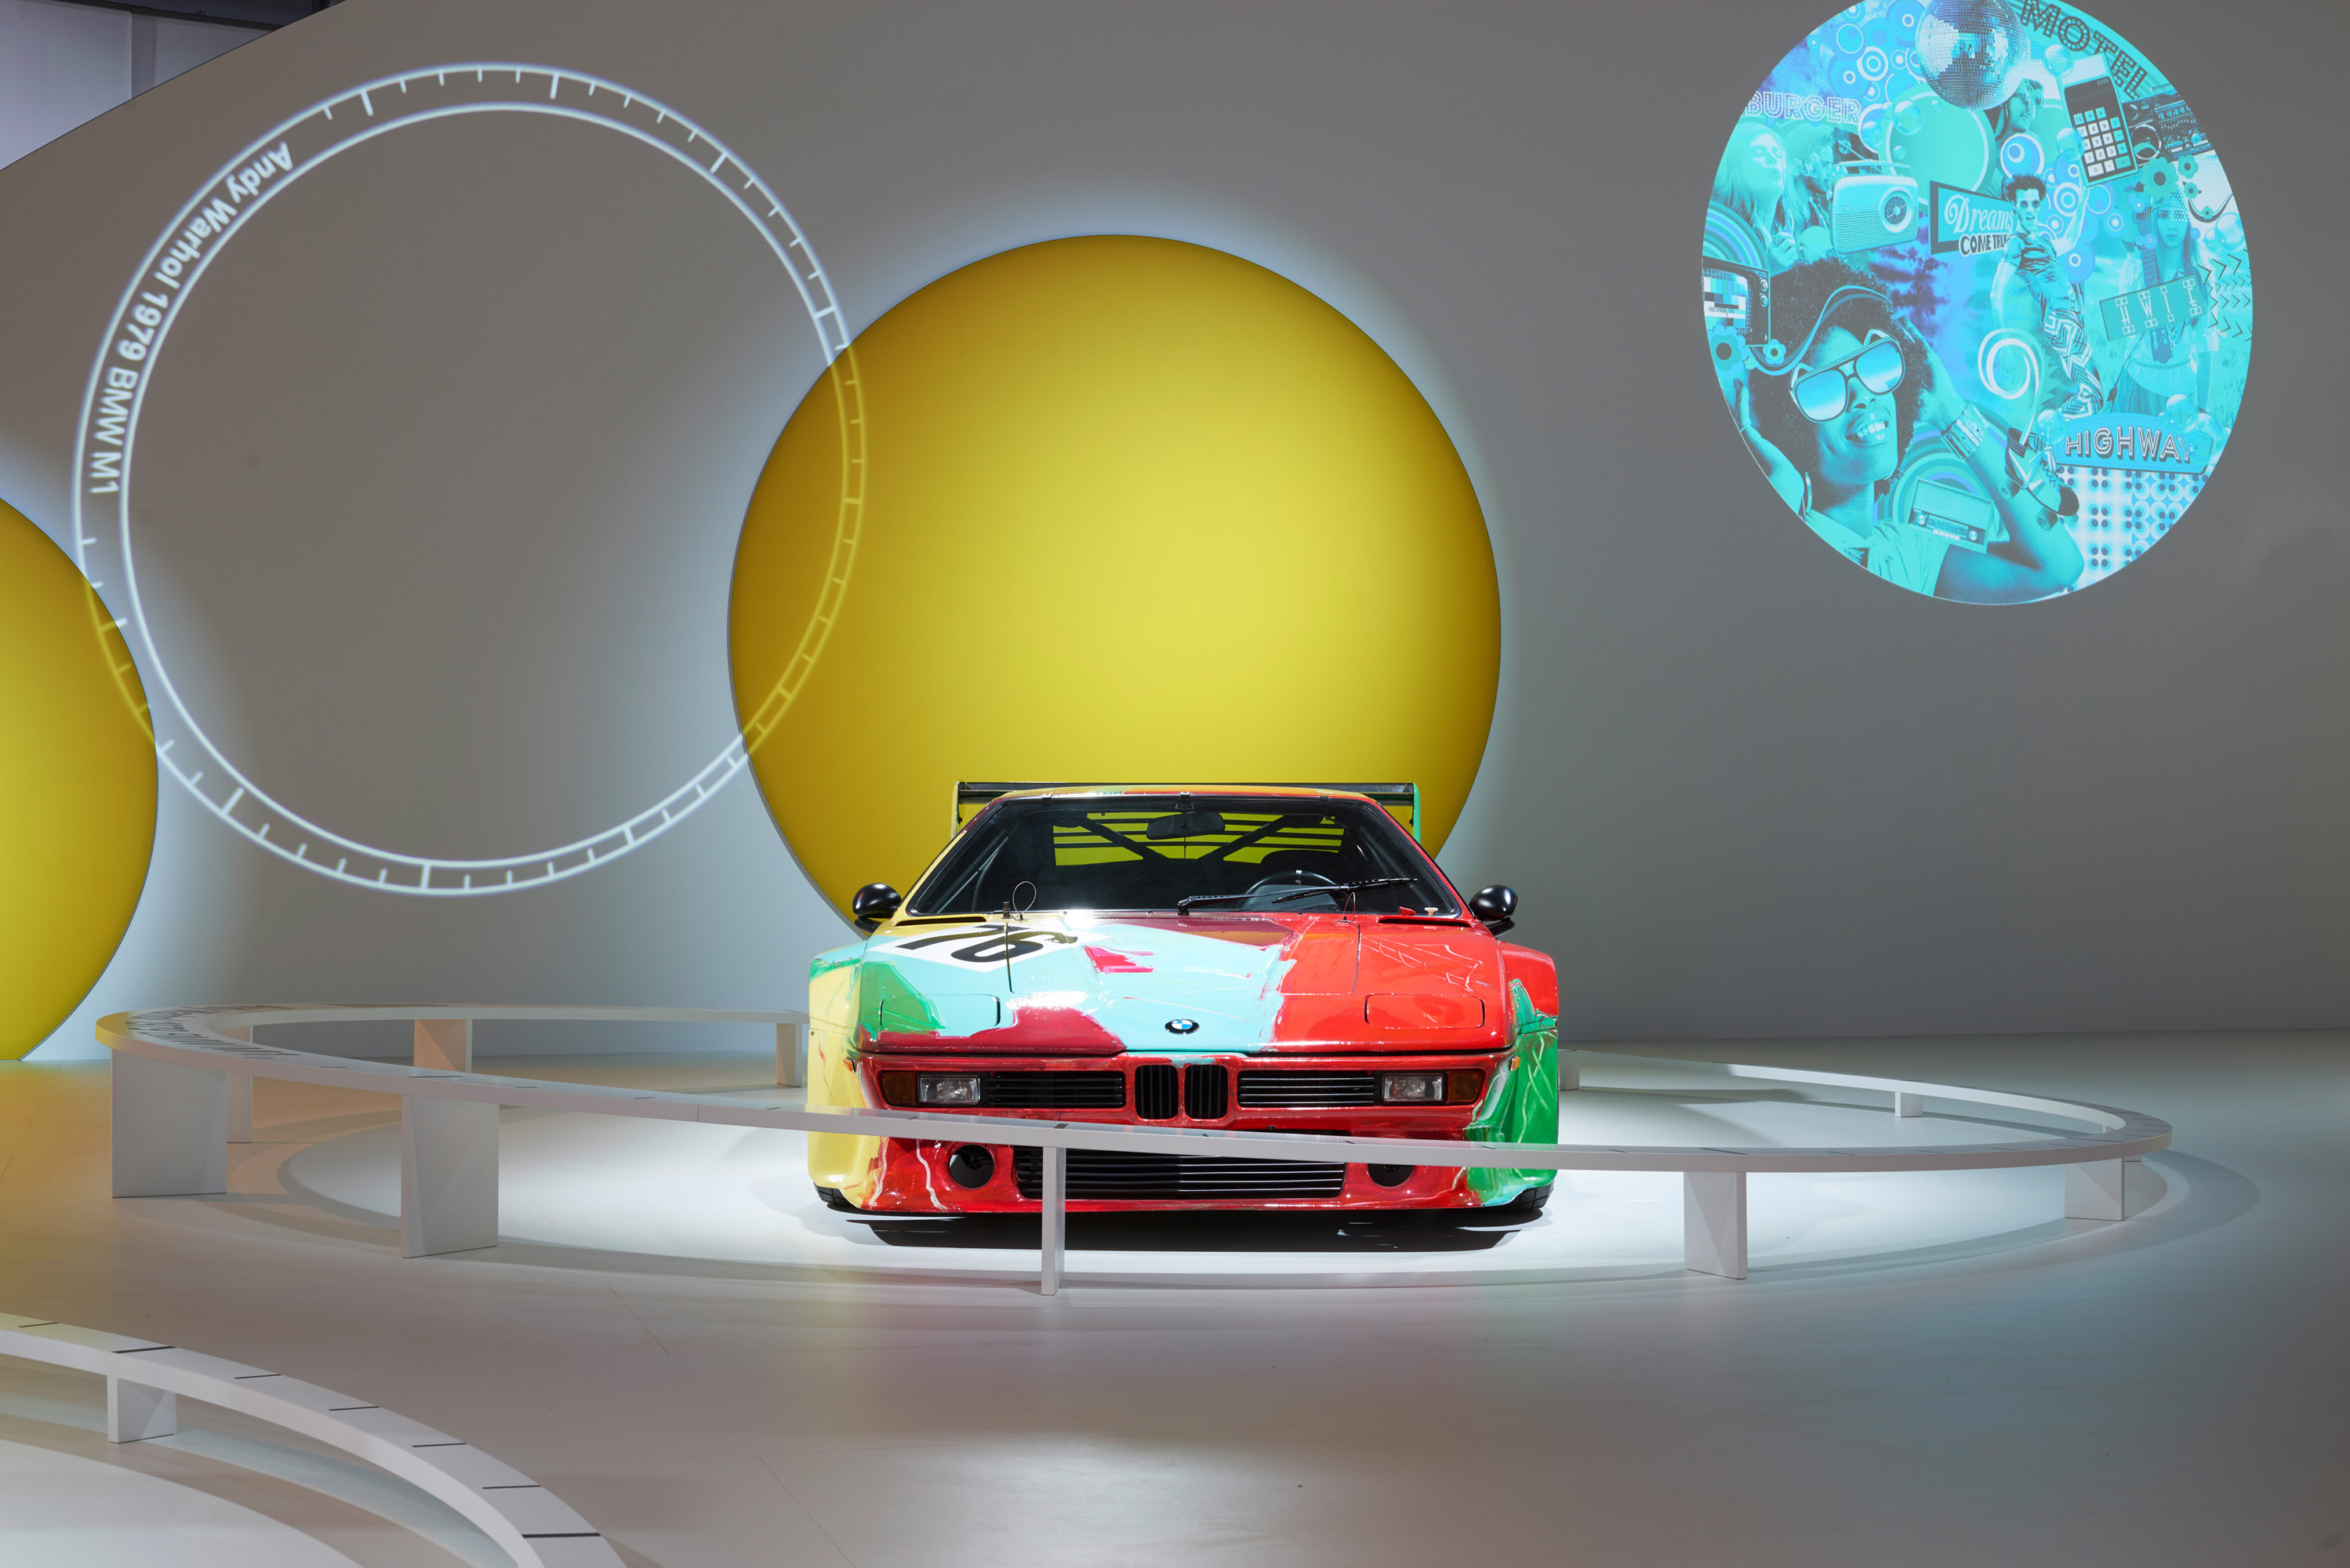 40 Years Anniversary of BMW Art Cars